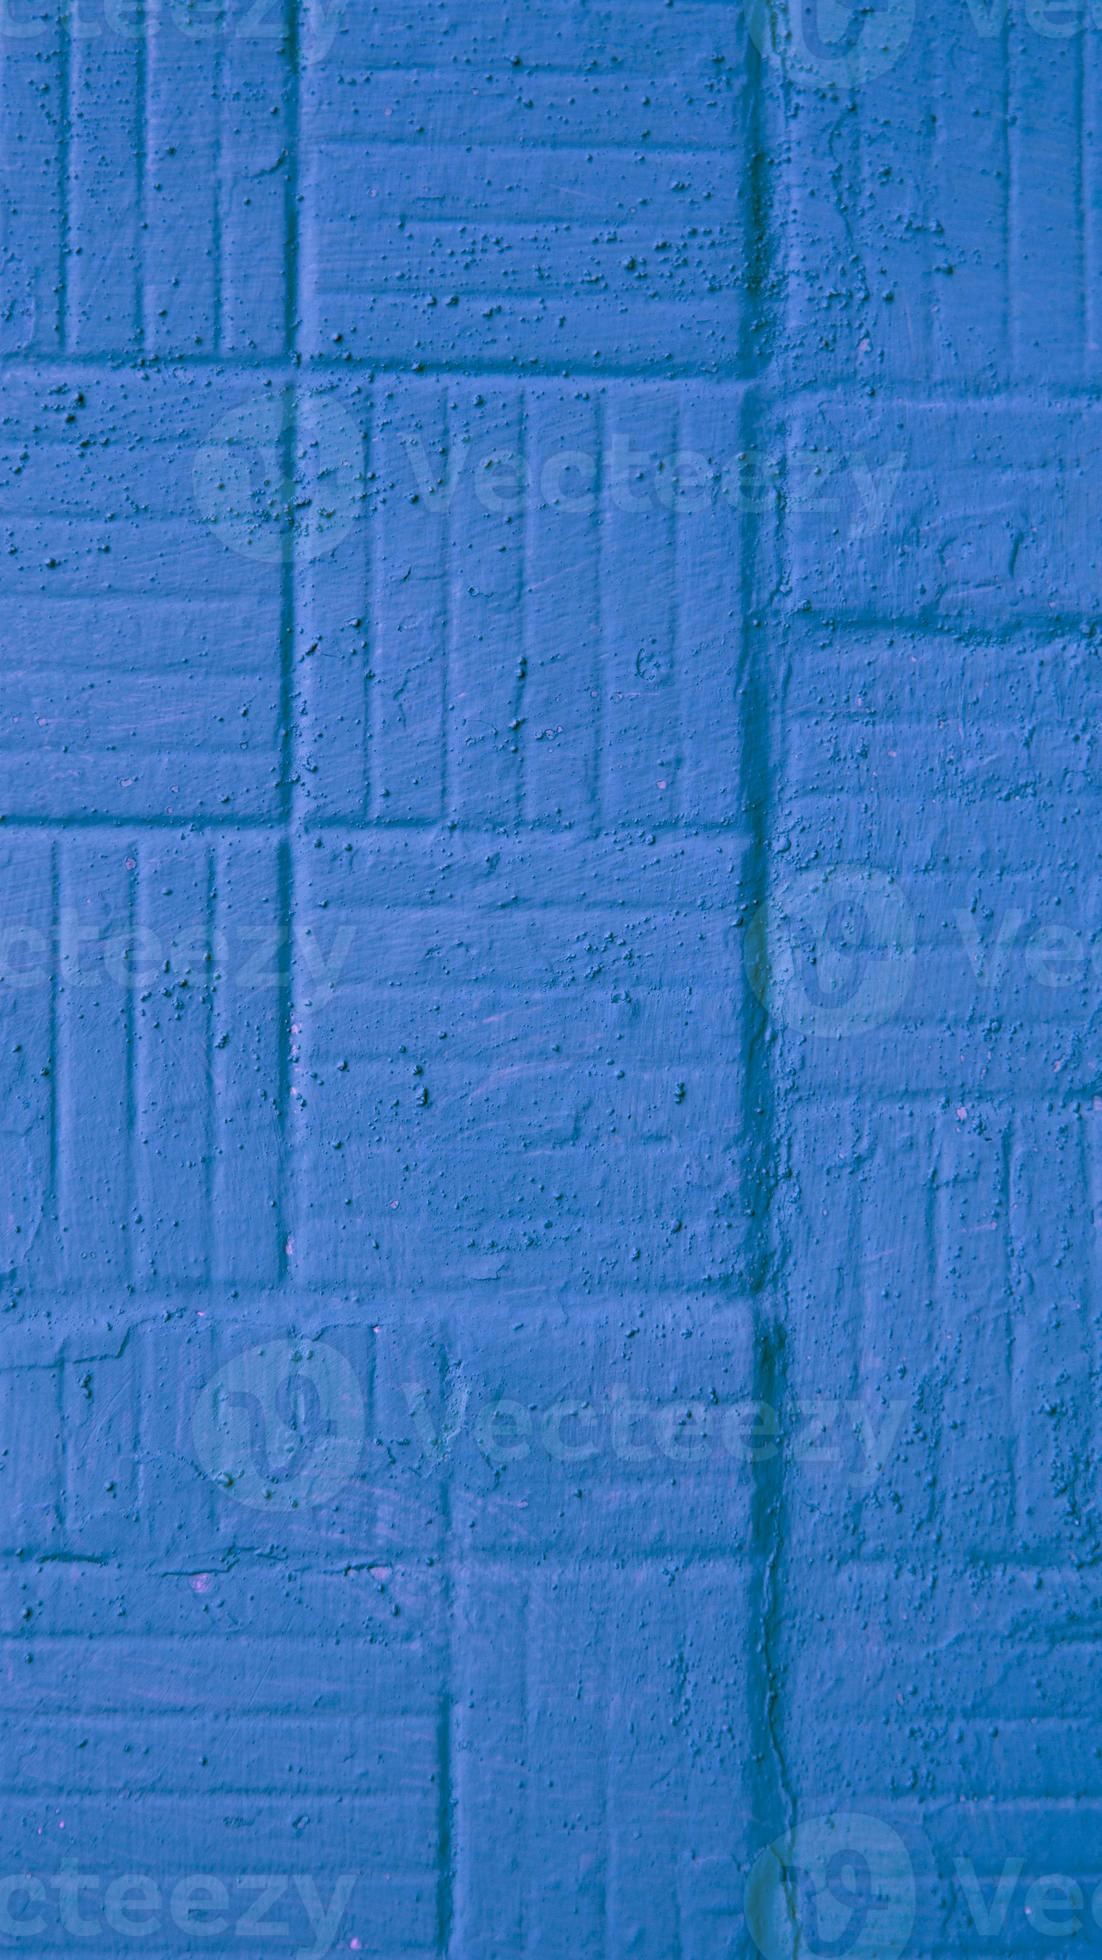 dekorativ vertikal blåmålad vägg med fyrkantig och remsor bakgrundsstruktur foto